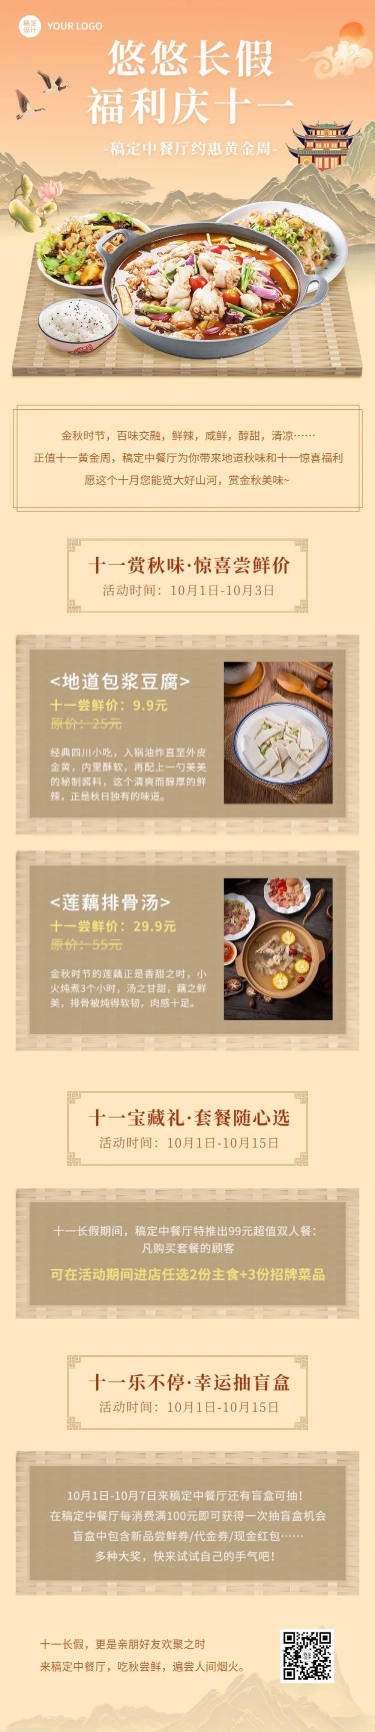 十一黄金周国庆餐饮中餐厅节日营销文章长图